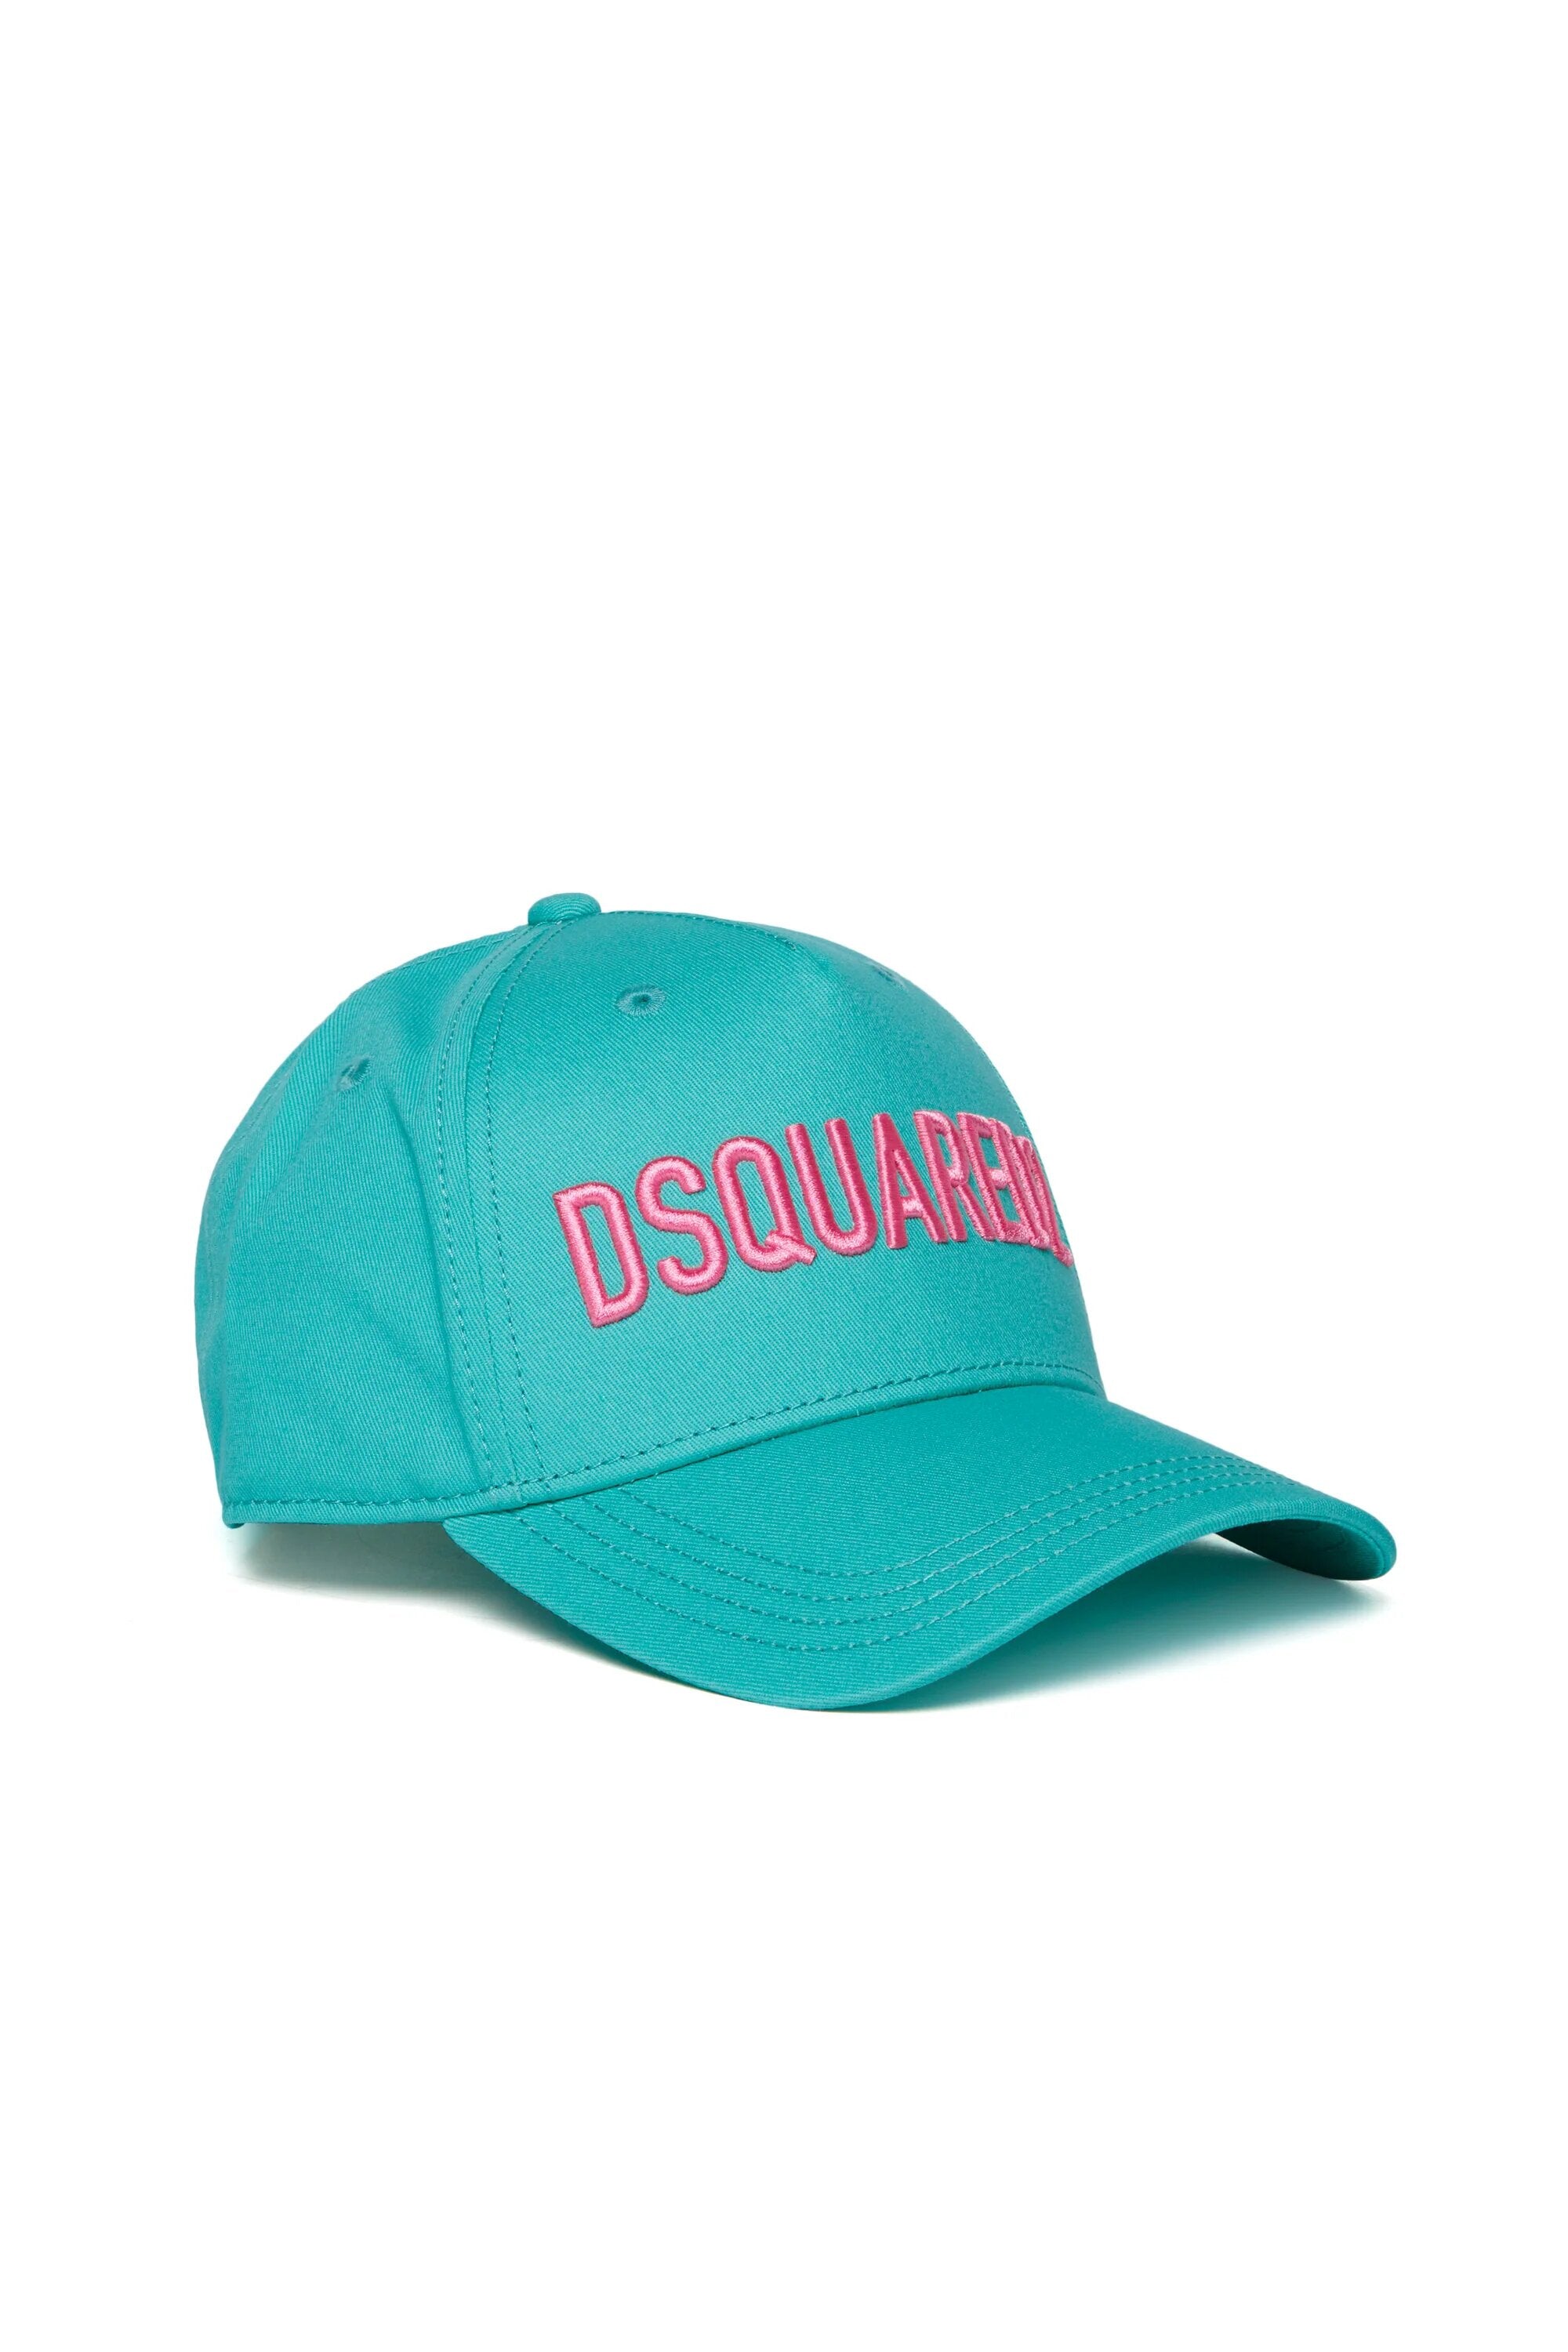 DSQUARED2-Cappello Unisex Bambino Logo-Azzurro